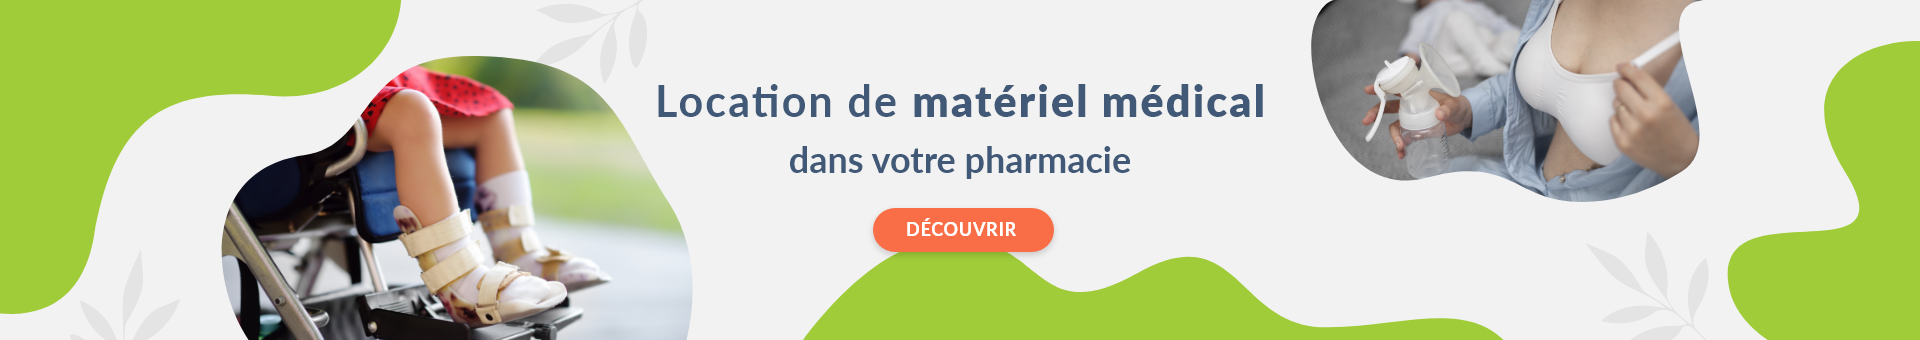 Pharmacie Leclercq,Lourdes